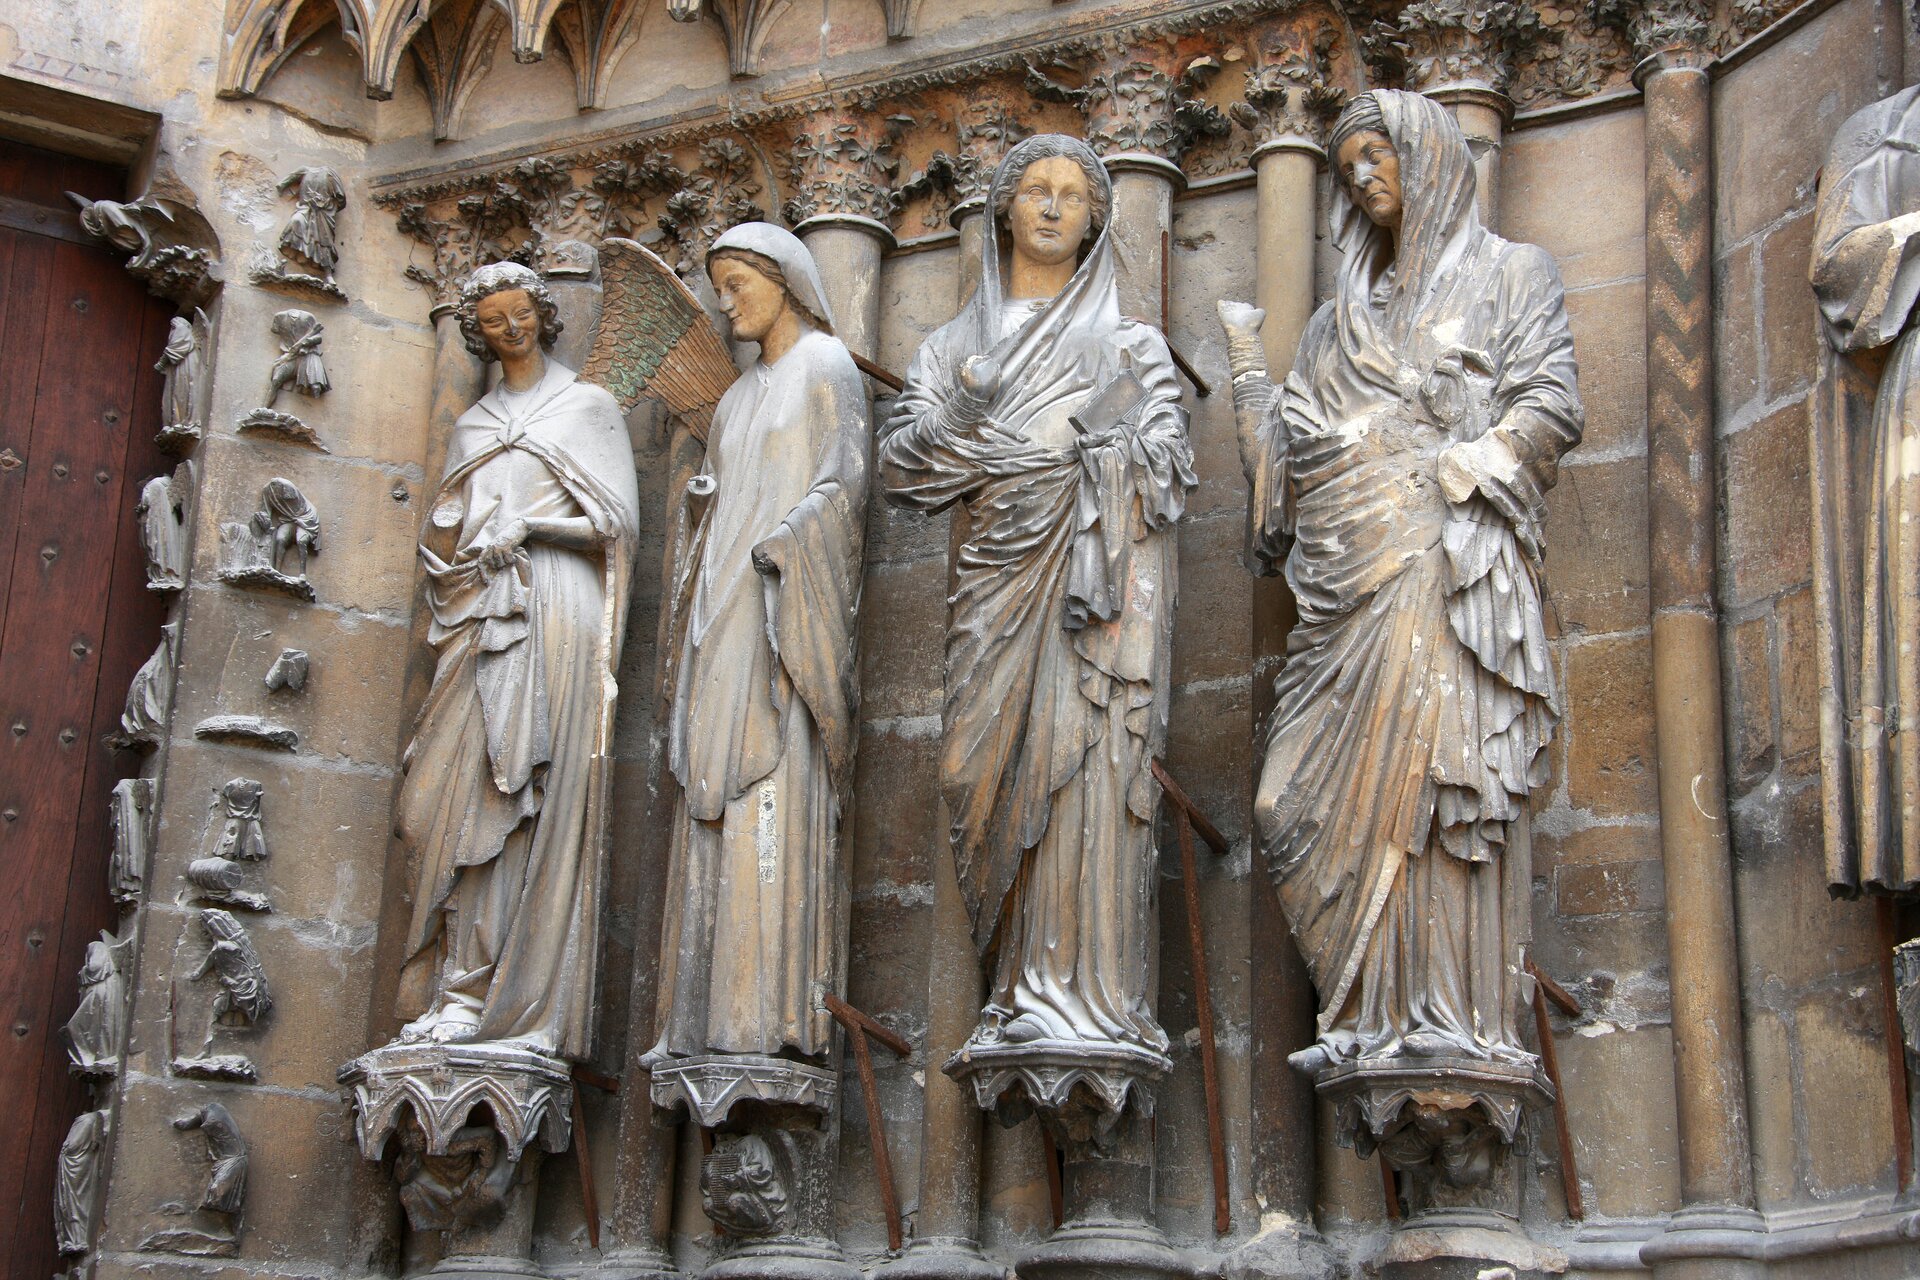 Odpowiedz na pytanie. Jakie motywy ikoniczne możemy znaleźć obserwując katedrę Reims?